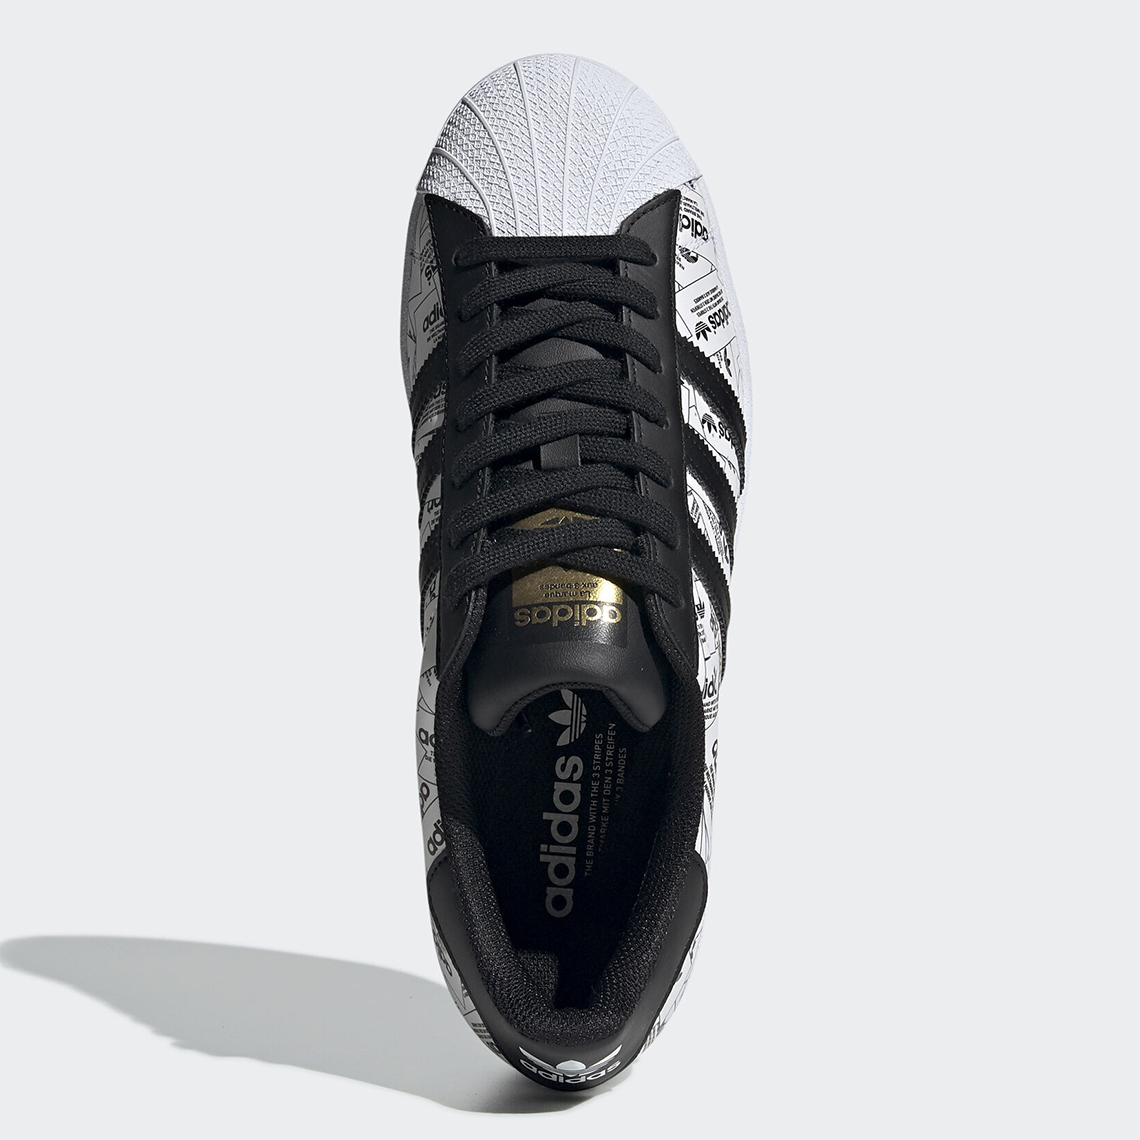 Adidas Superstar Fv2819 2